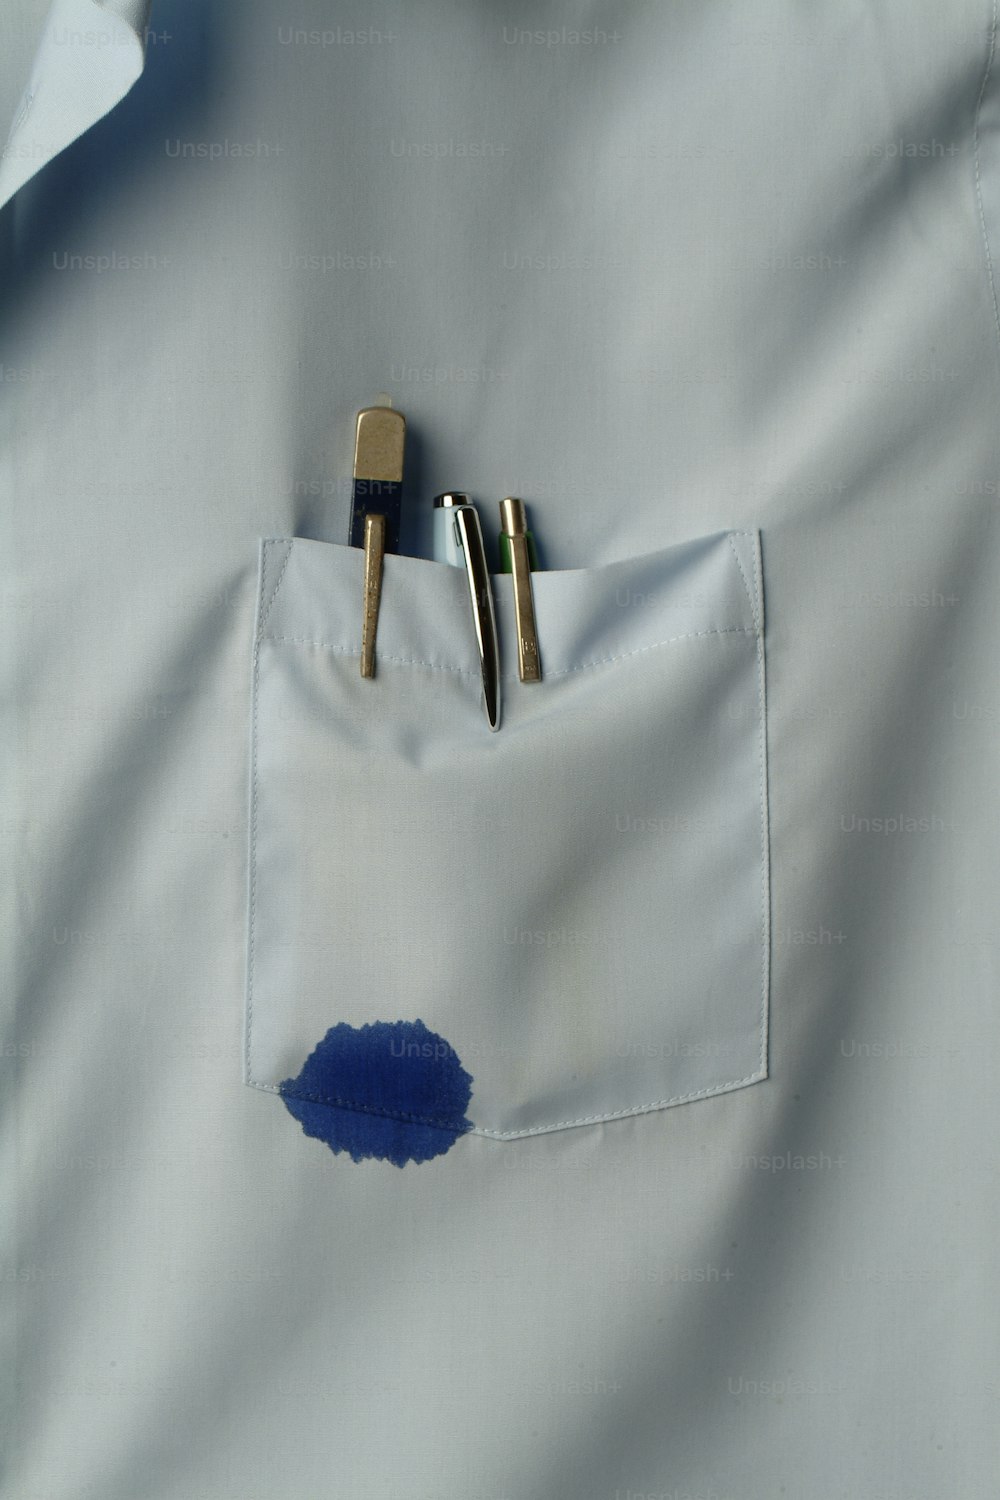 Vista de cerca del bolsillo de una camisa que contiene varios bolígrafos, uno de los cuales gotea tinta azul, California, década de 1970. (Foto de Tom Kelley/Getty Images)